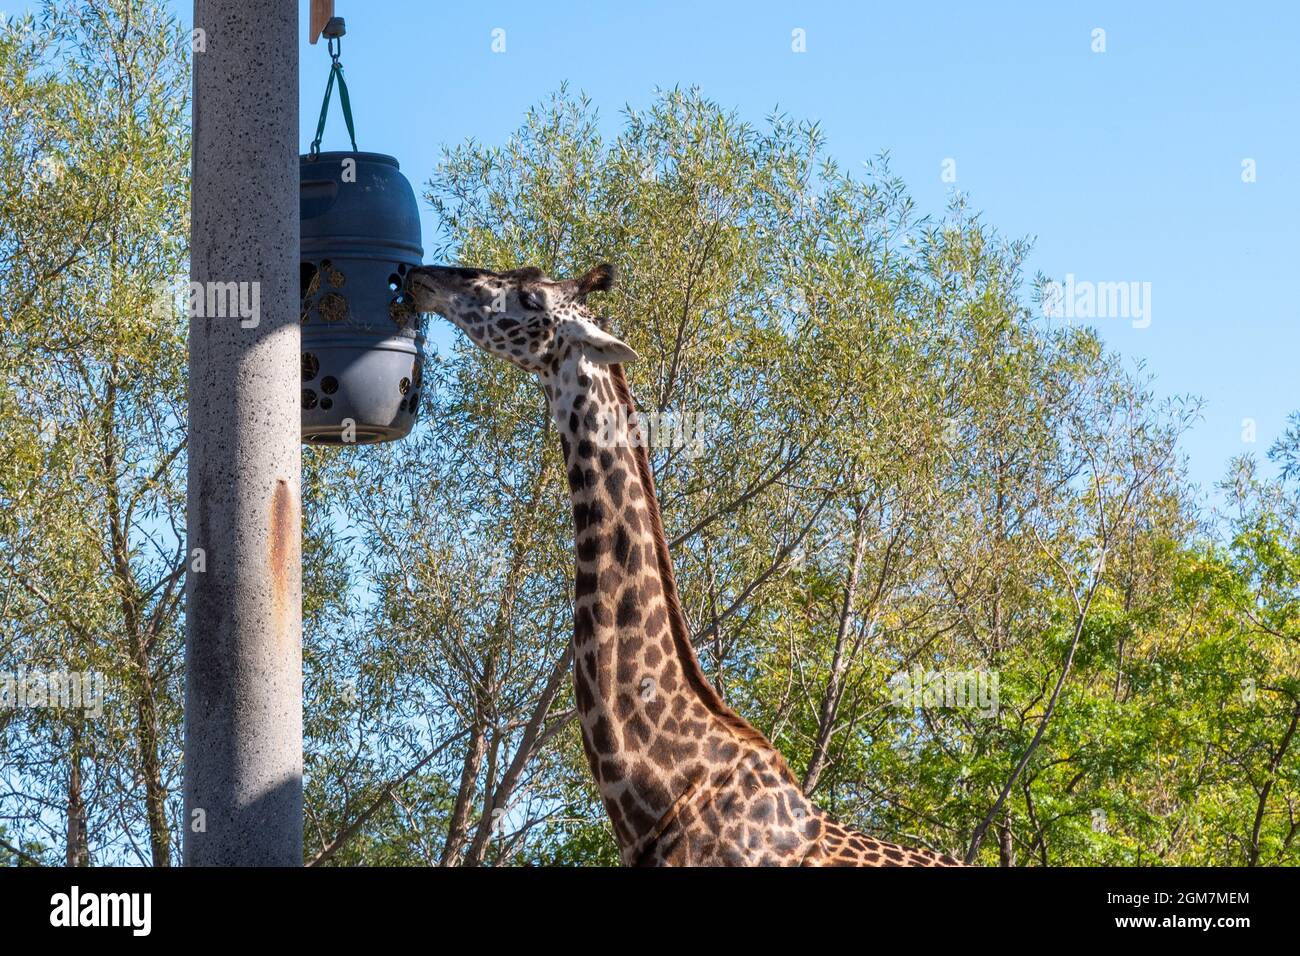 Une girafe mangeant au zoo de Toronto, dans la ville de Toronto, au Canada. Le célèbre endroit est une attraction touristique et un monument local Banque D'Images